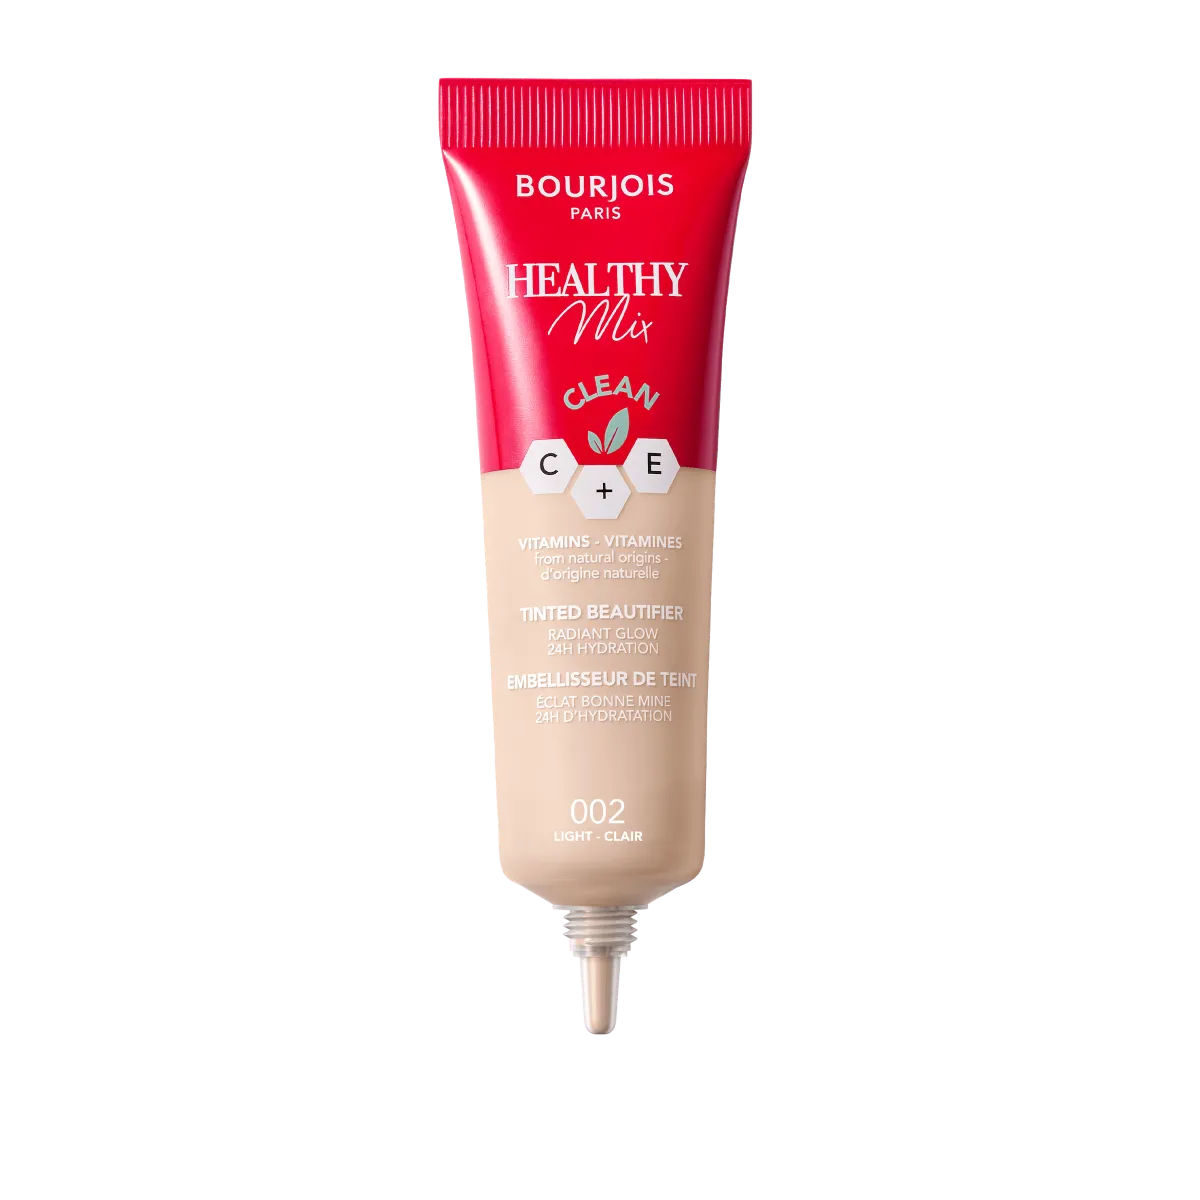 Bourjois Healthy Mix podkład witaminowy do twarzy krem tonujący o naturalnym wykończeniu, 002 Light, 30 ml 